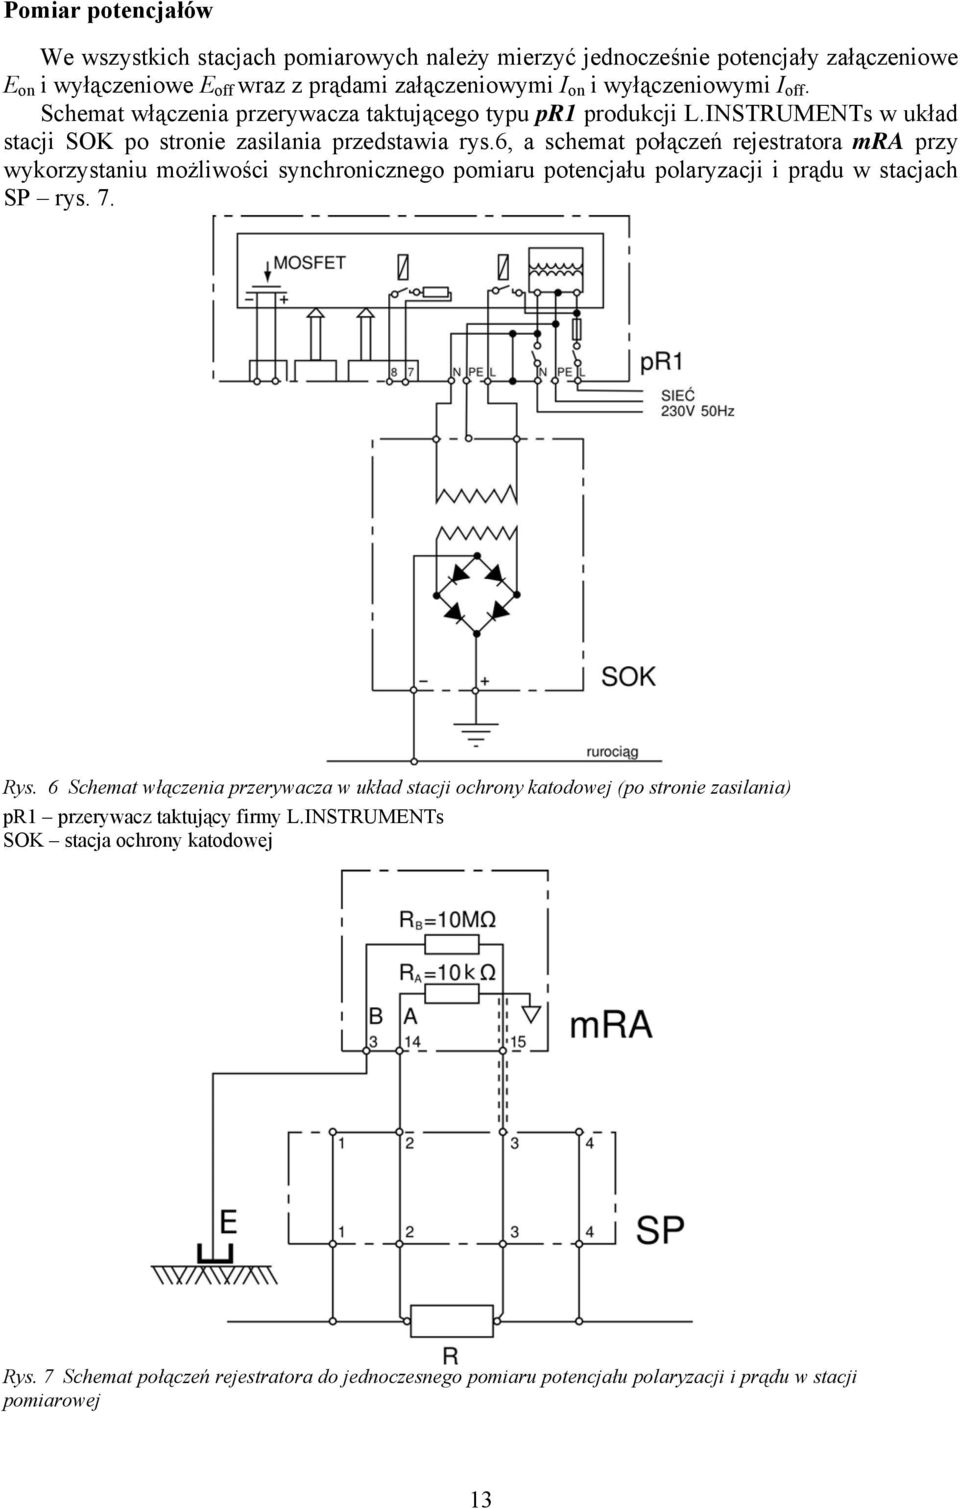 6, a schemat połączeń rejestratora mra przy wykorzystaniu możliwości synchricznego pomiaru potencjału polaryzacji i prądu w stacjach SP rys. 7. Rys.